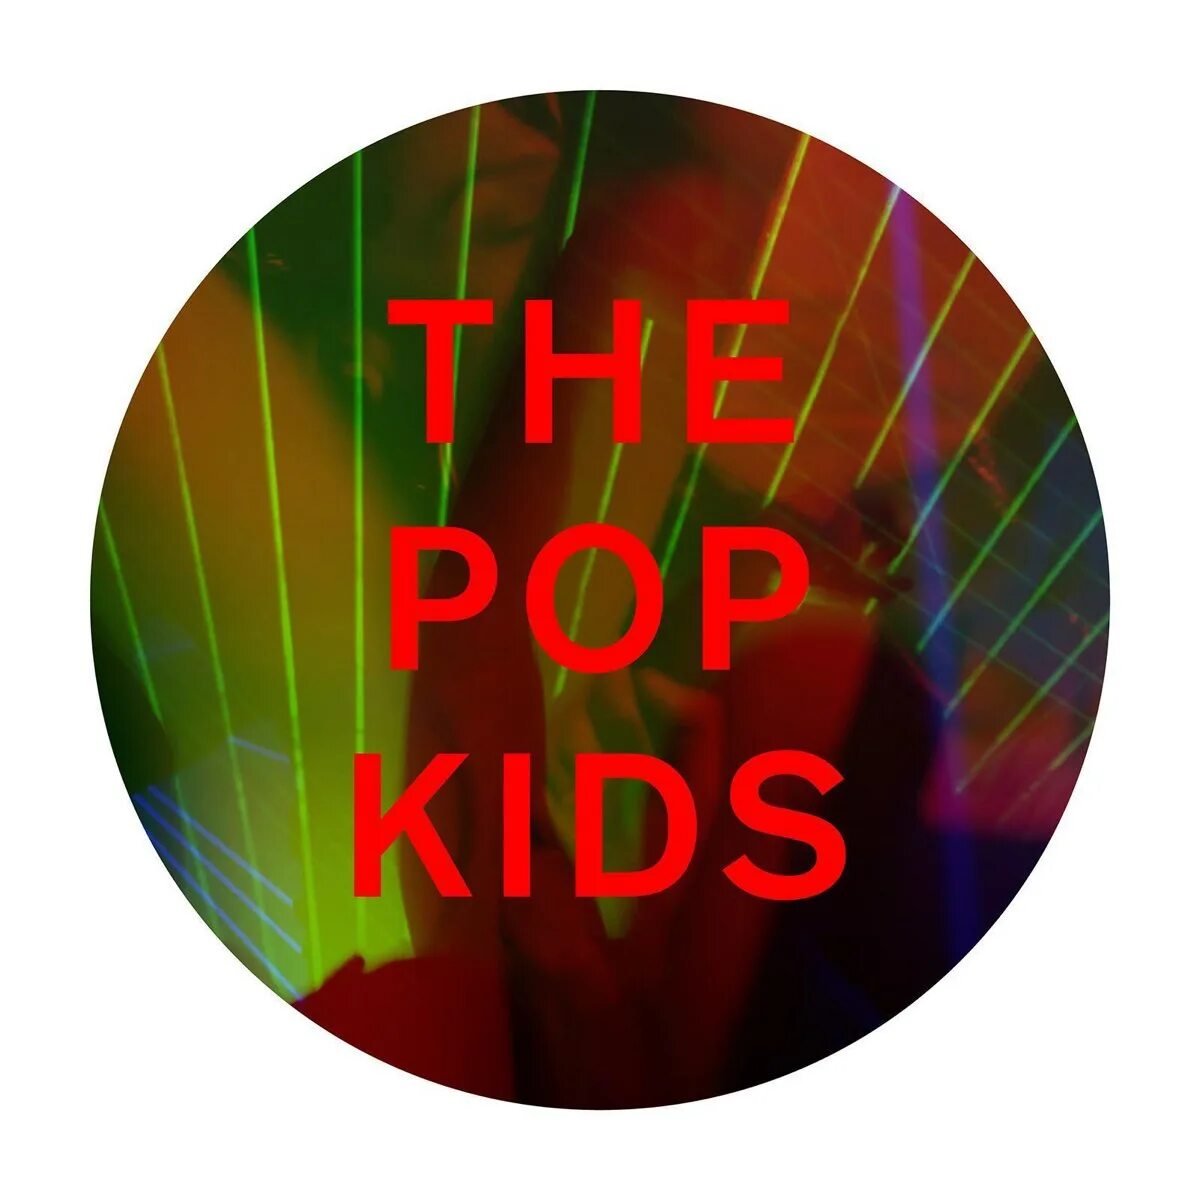 Pet shop boys shopping remix. Pet shop boys the Pop Kids. Pet shop boys Remixes. Pops Kids. Pet shop boys the Pop Kids альбом.